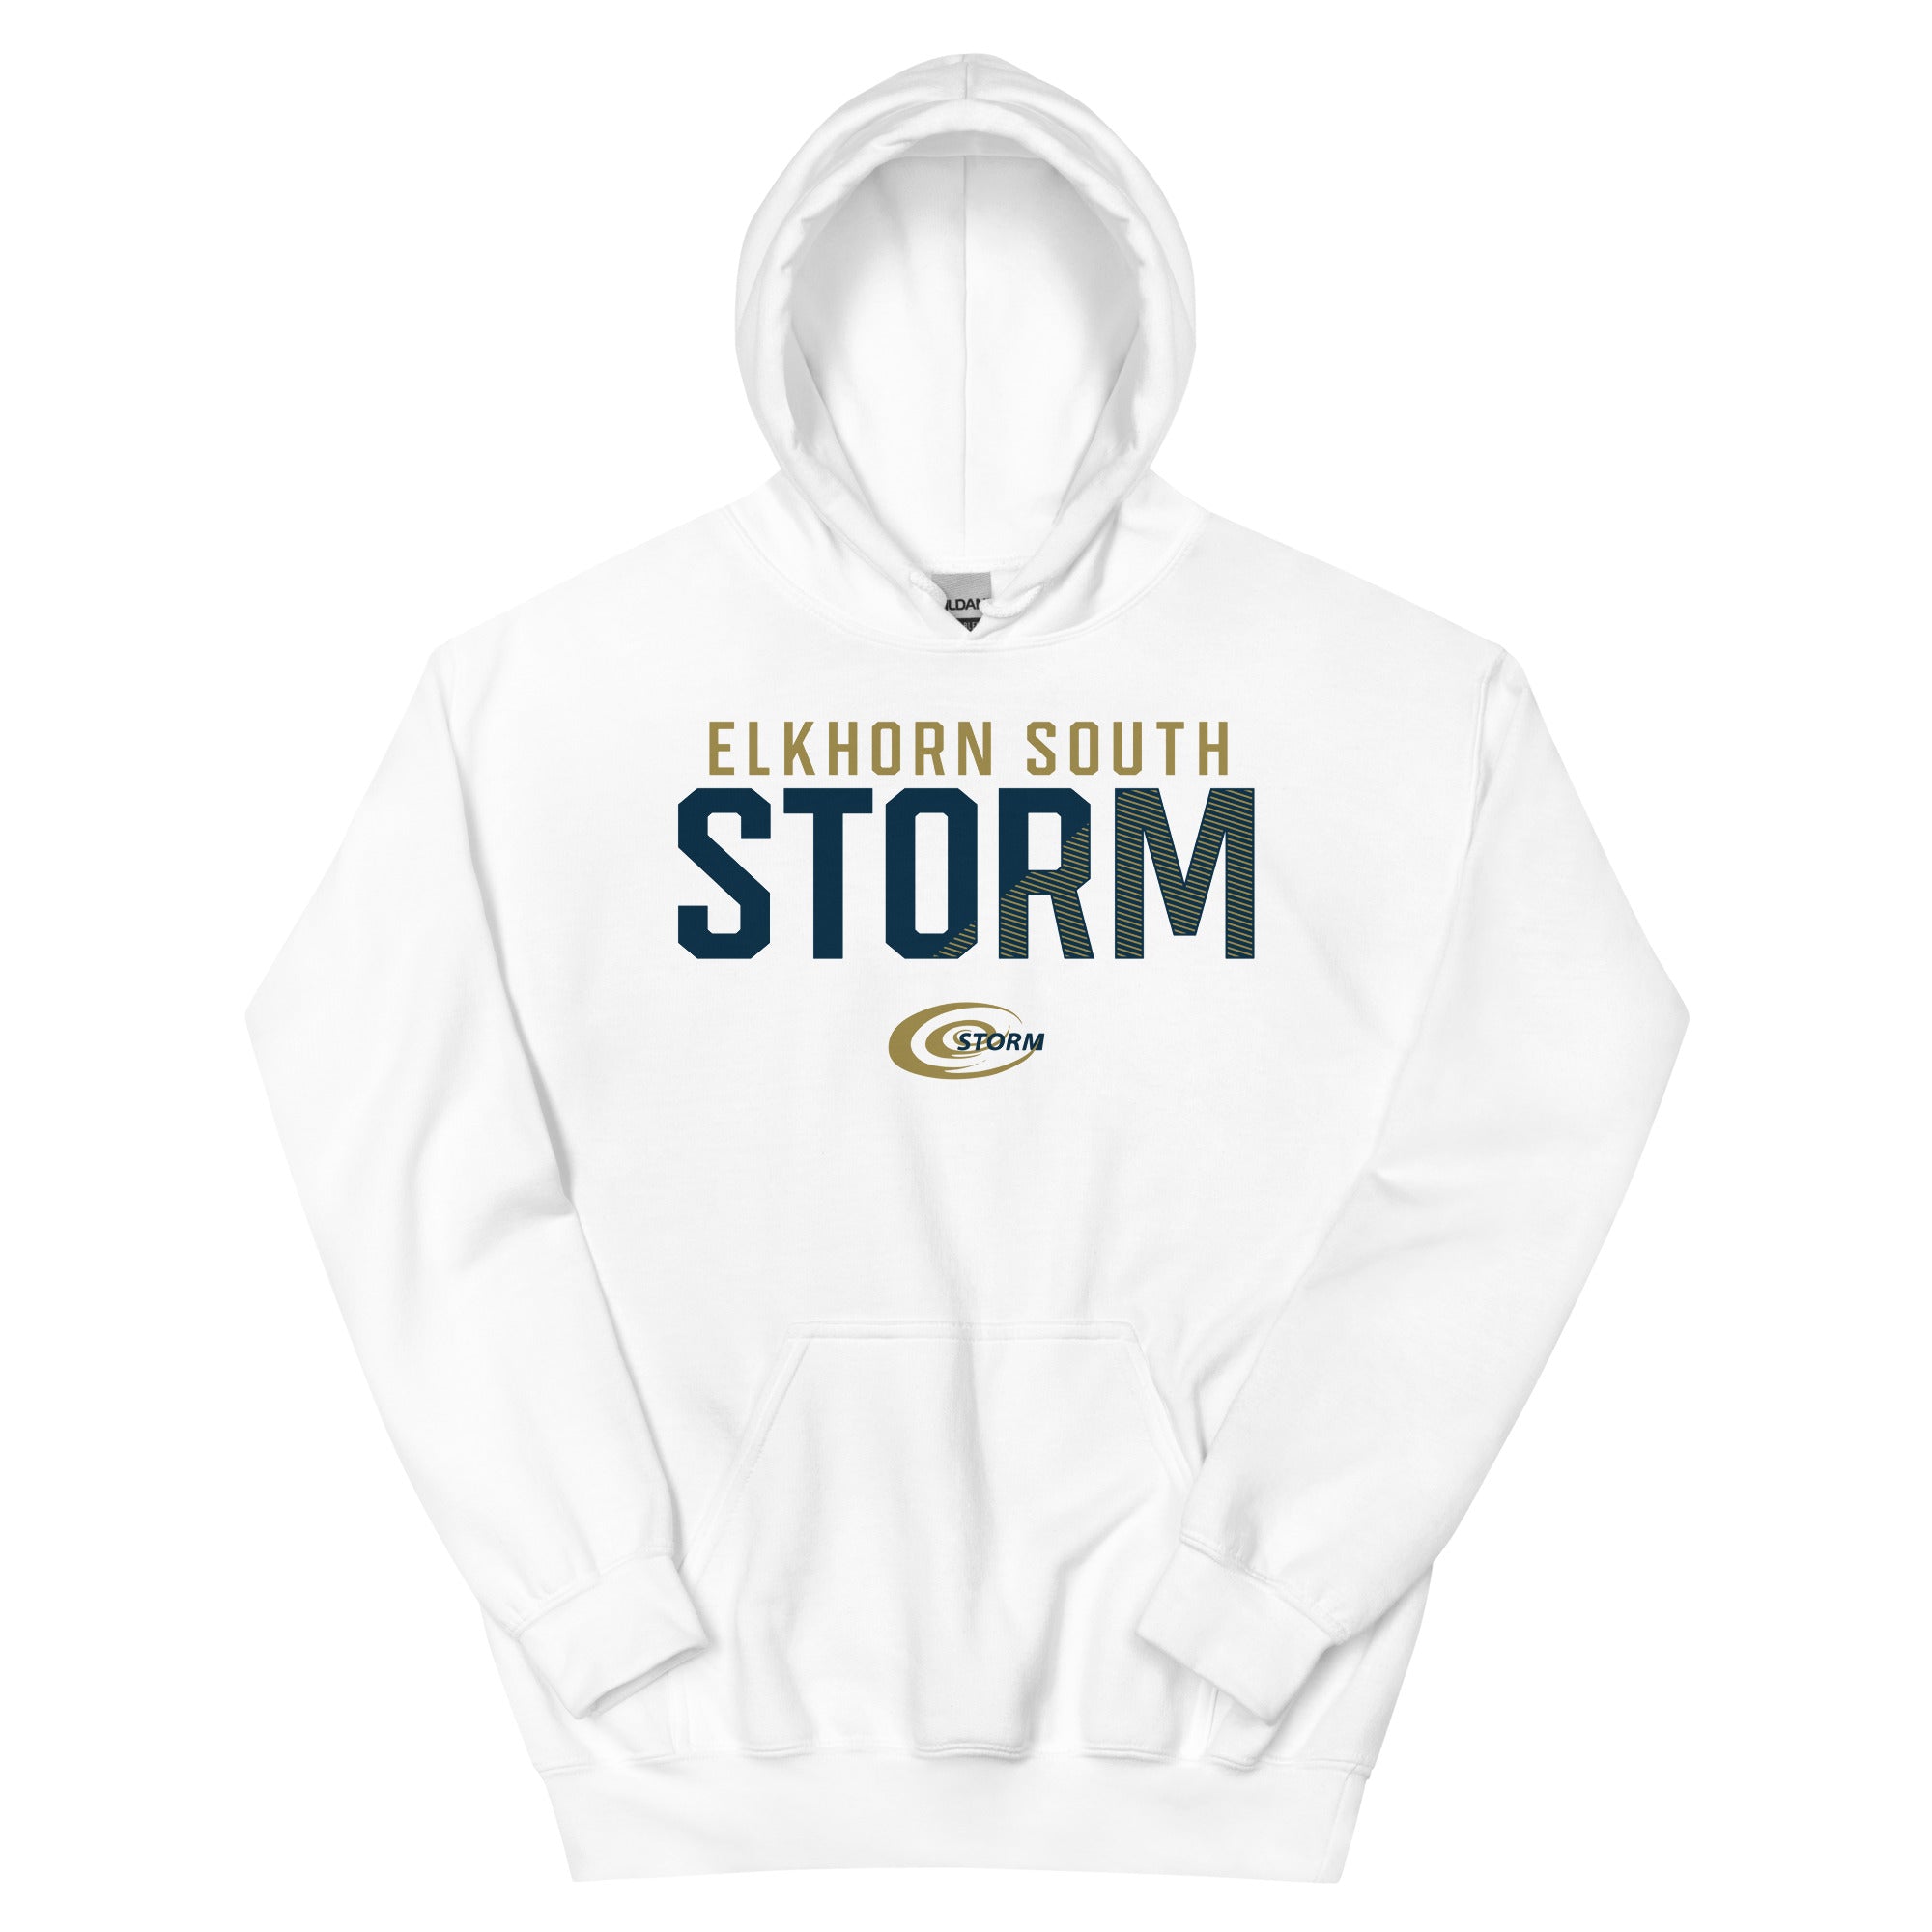 Elkhorn South Storm Unisex Hoodie